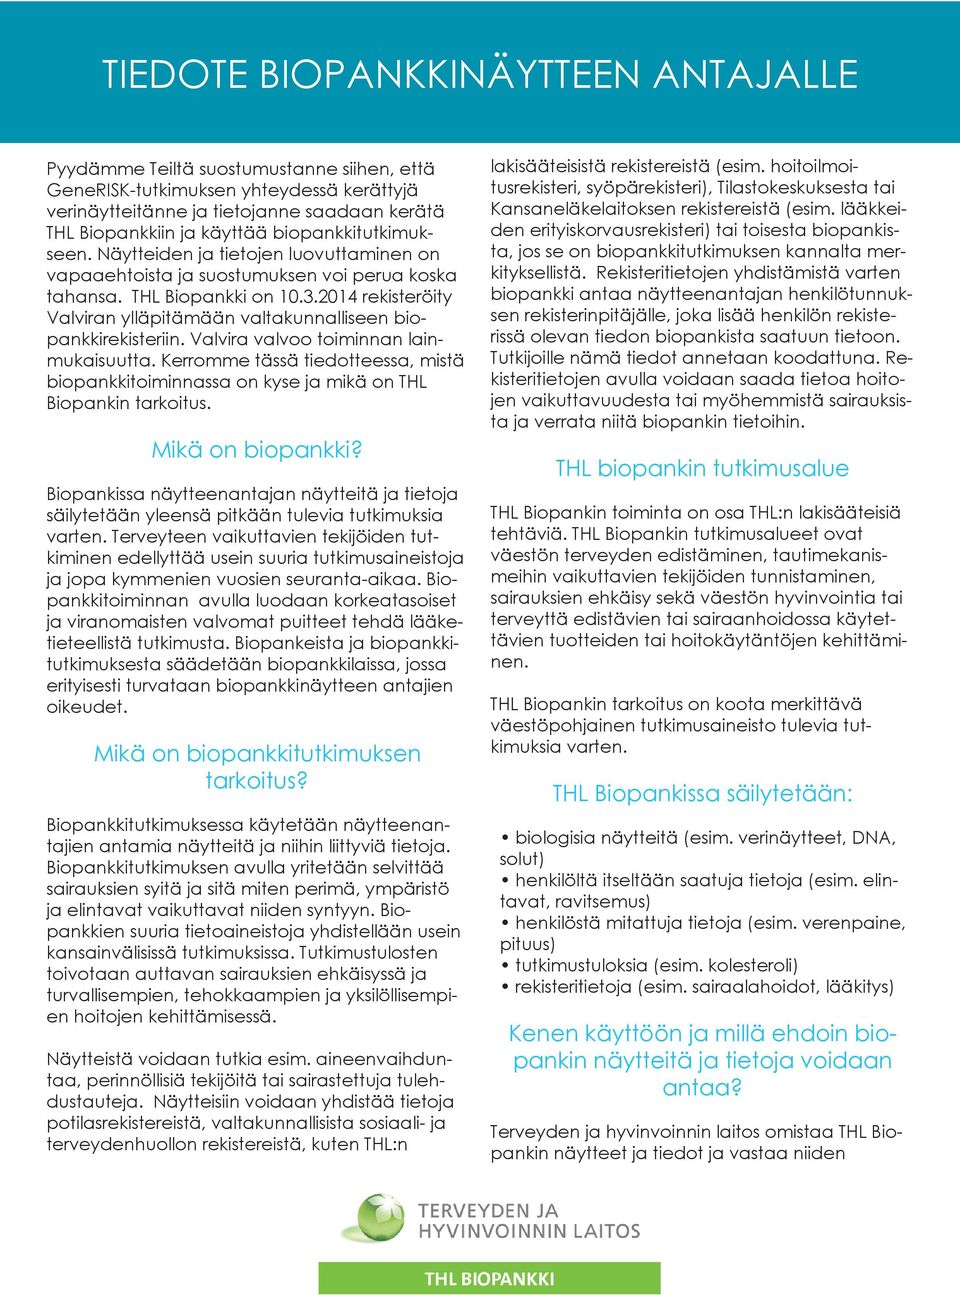 2014 rekisteröity Valviran ylläpitämään valtakunnalliseen biopankkirekisteriin. Valvira valvoo toiminnan lainmukaisuutta.